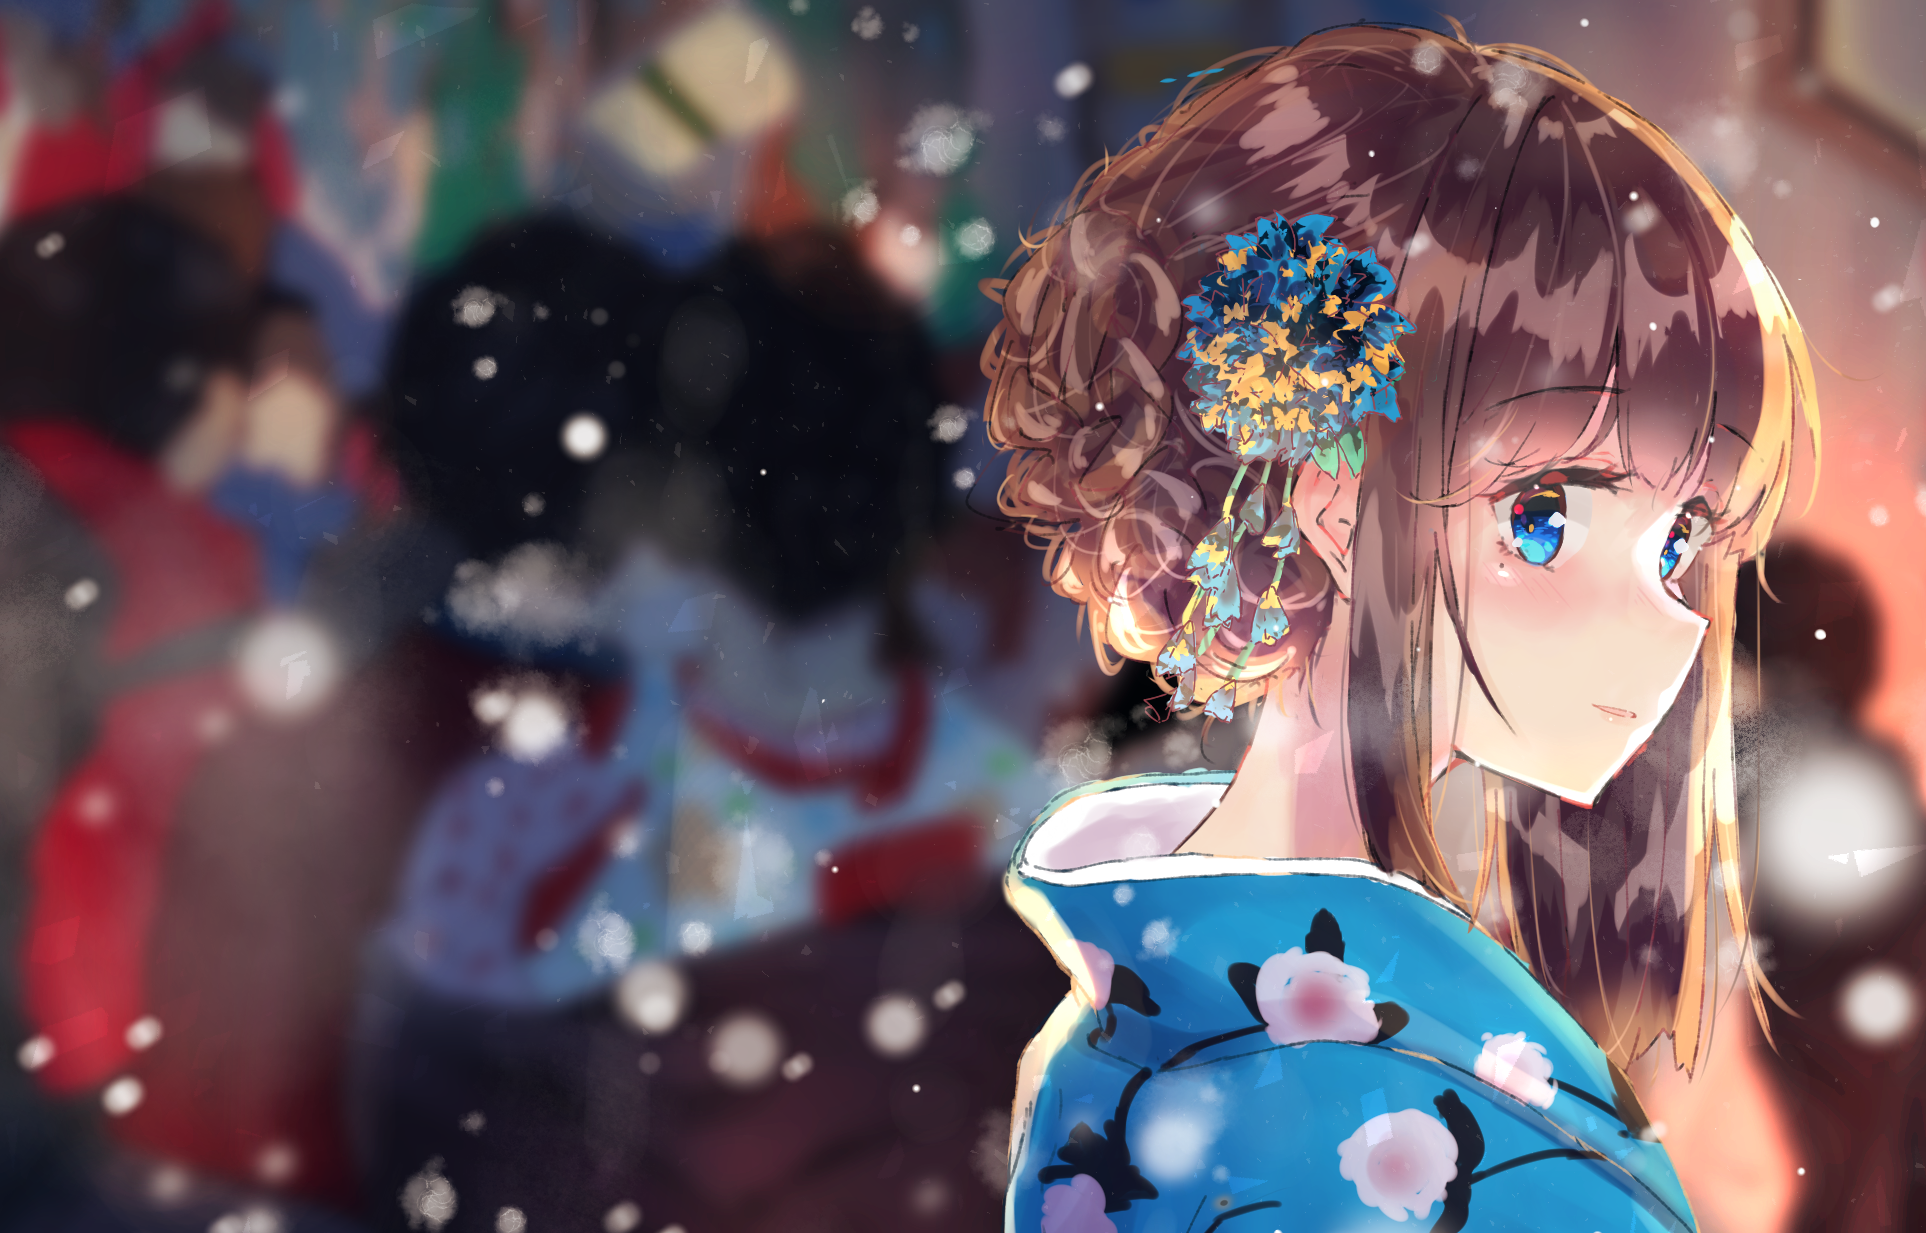 Download 1926x1233 Anime Girl, Brown Hair, Kimono, Snow, Blue Eyes, Profile View Wallpaper